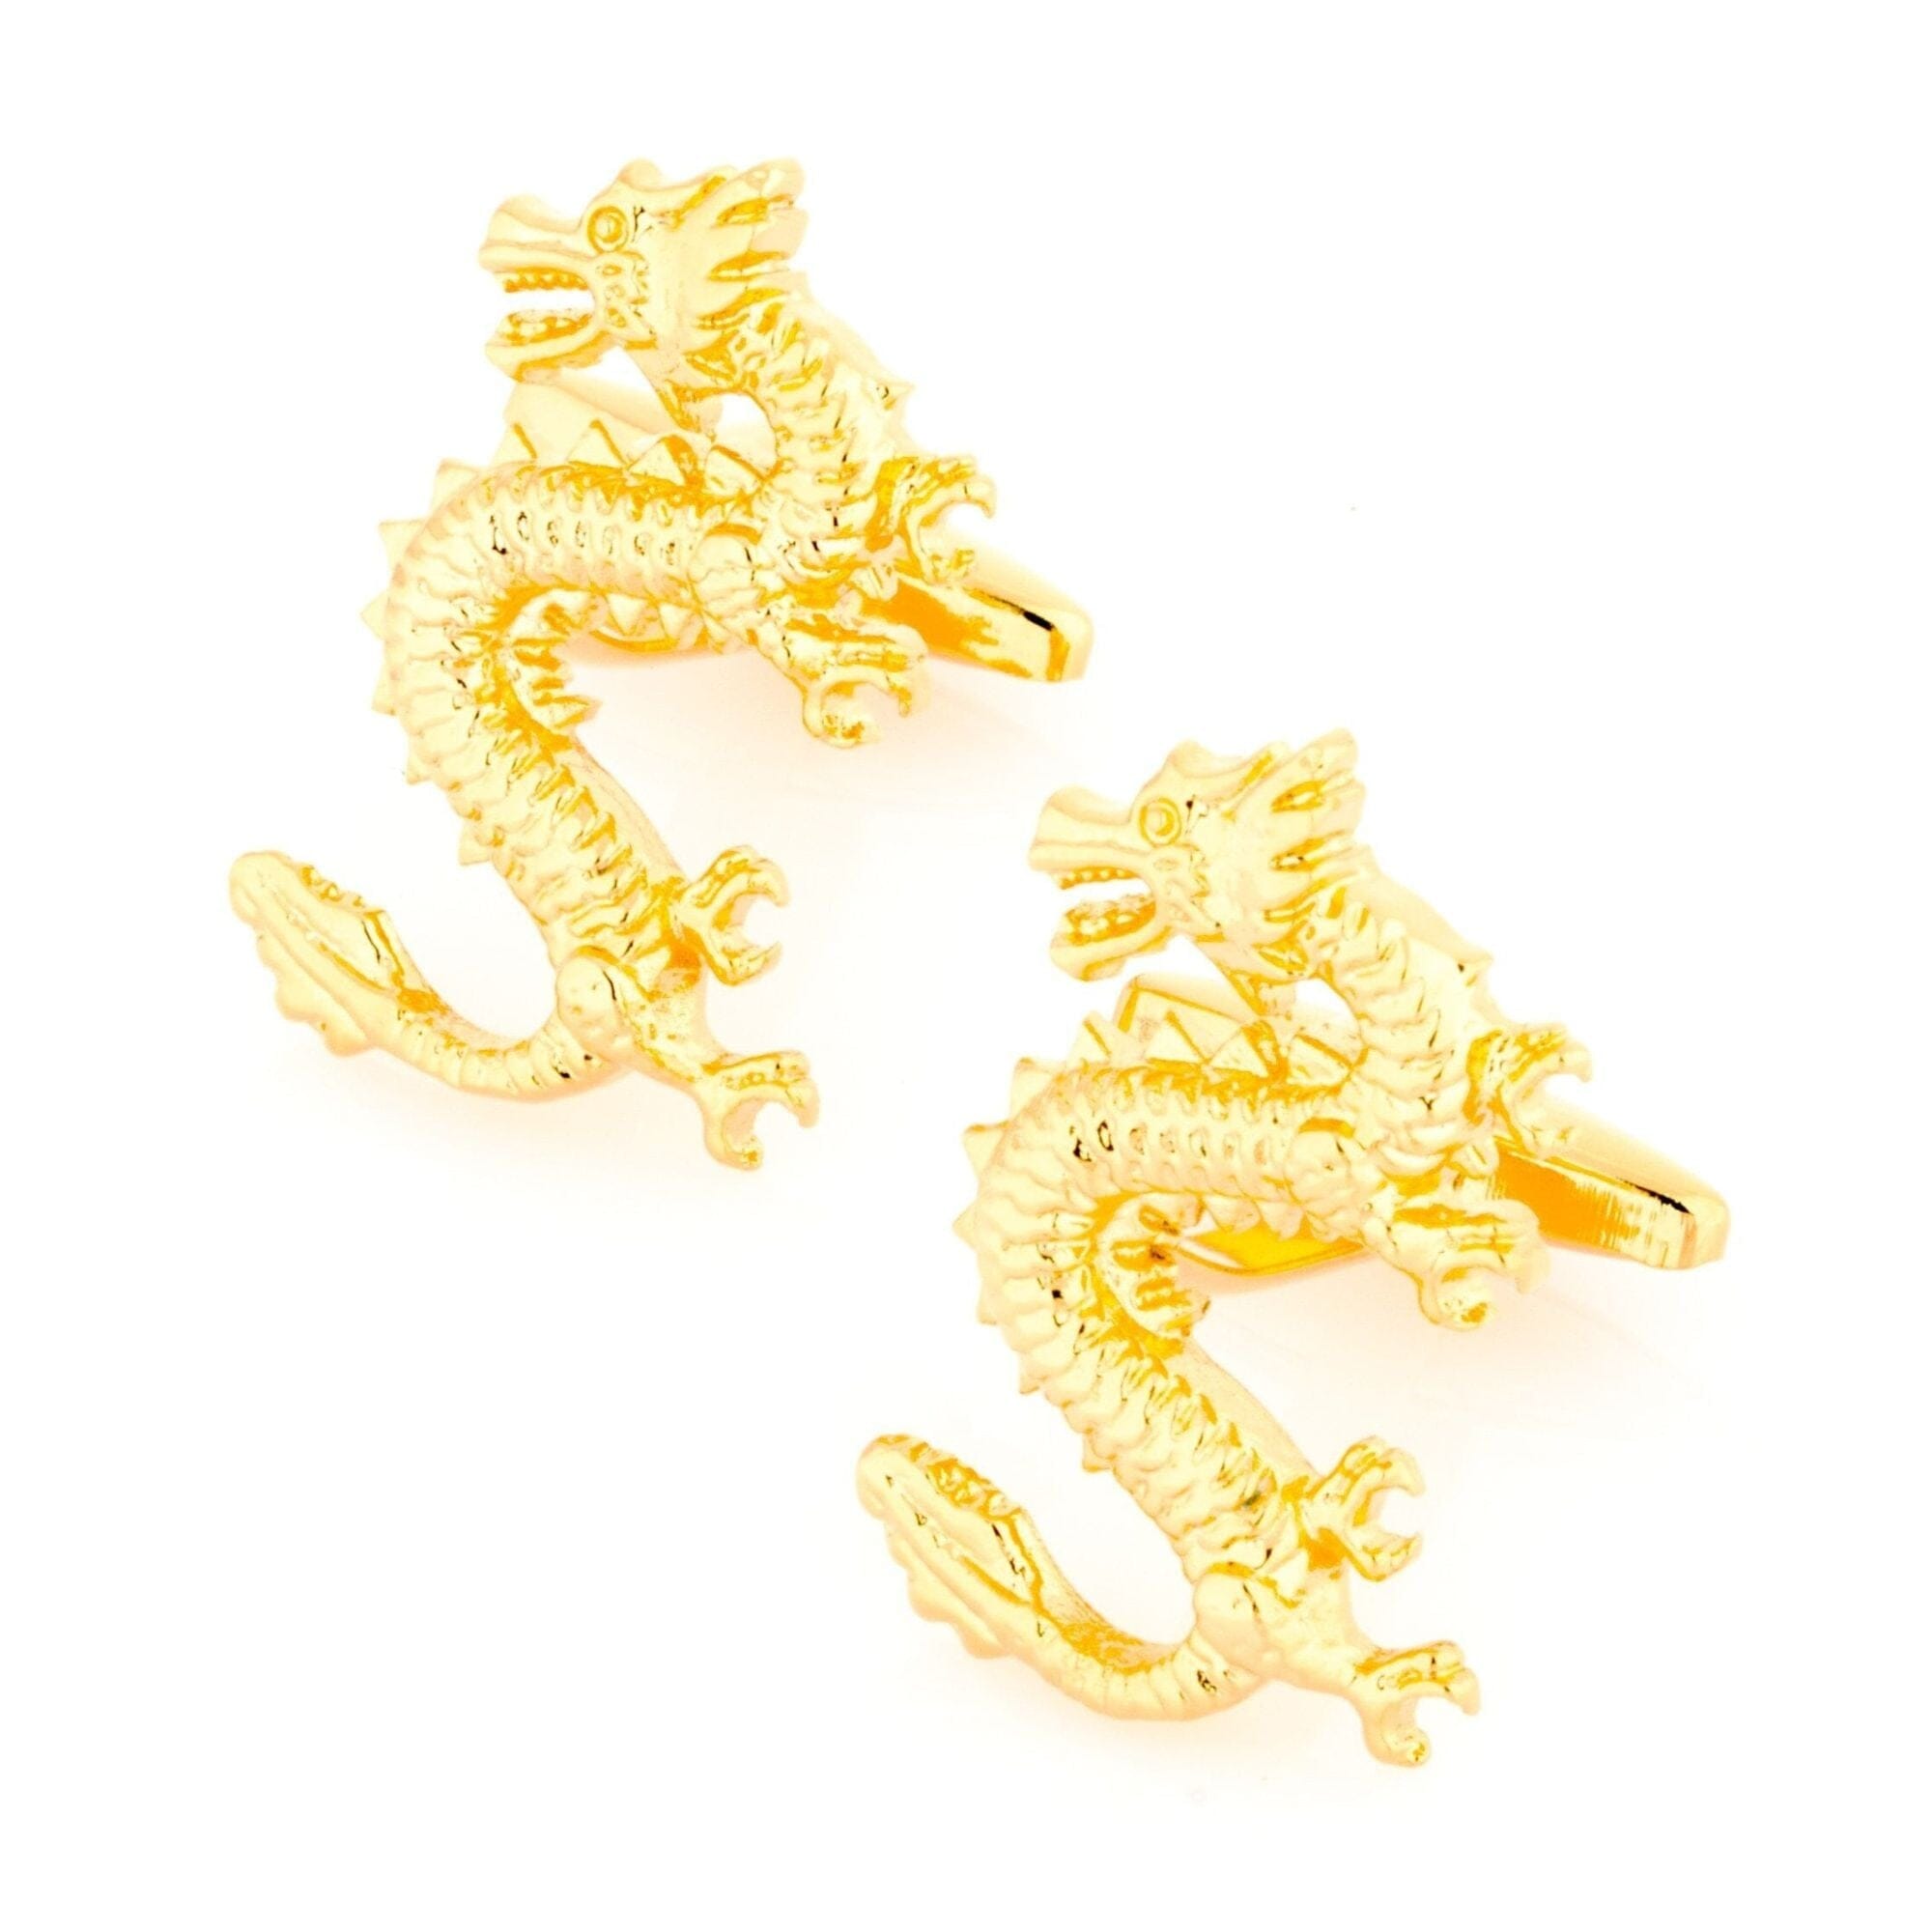 Golden Lucky Chinese Dragon Cufflinks Novelty Cufflinks Clinks Australia Golden Lucky Chinese Dragon Cufflinks 